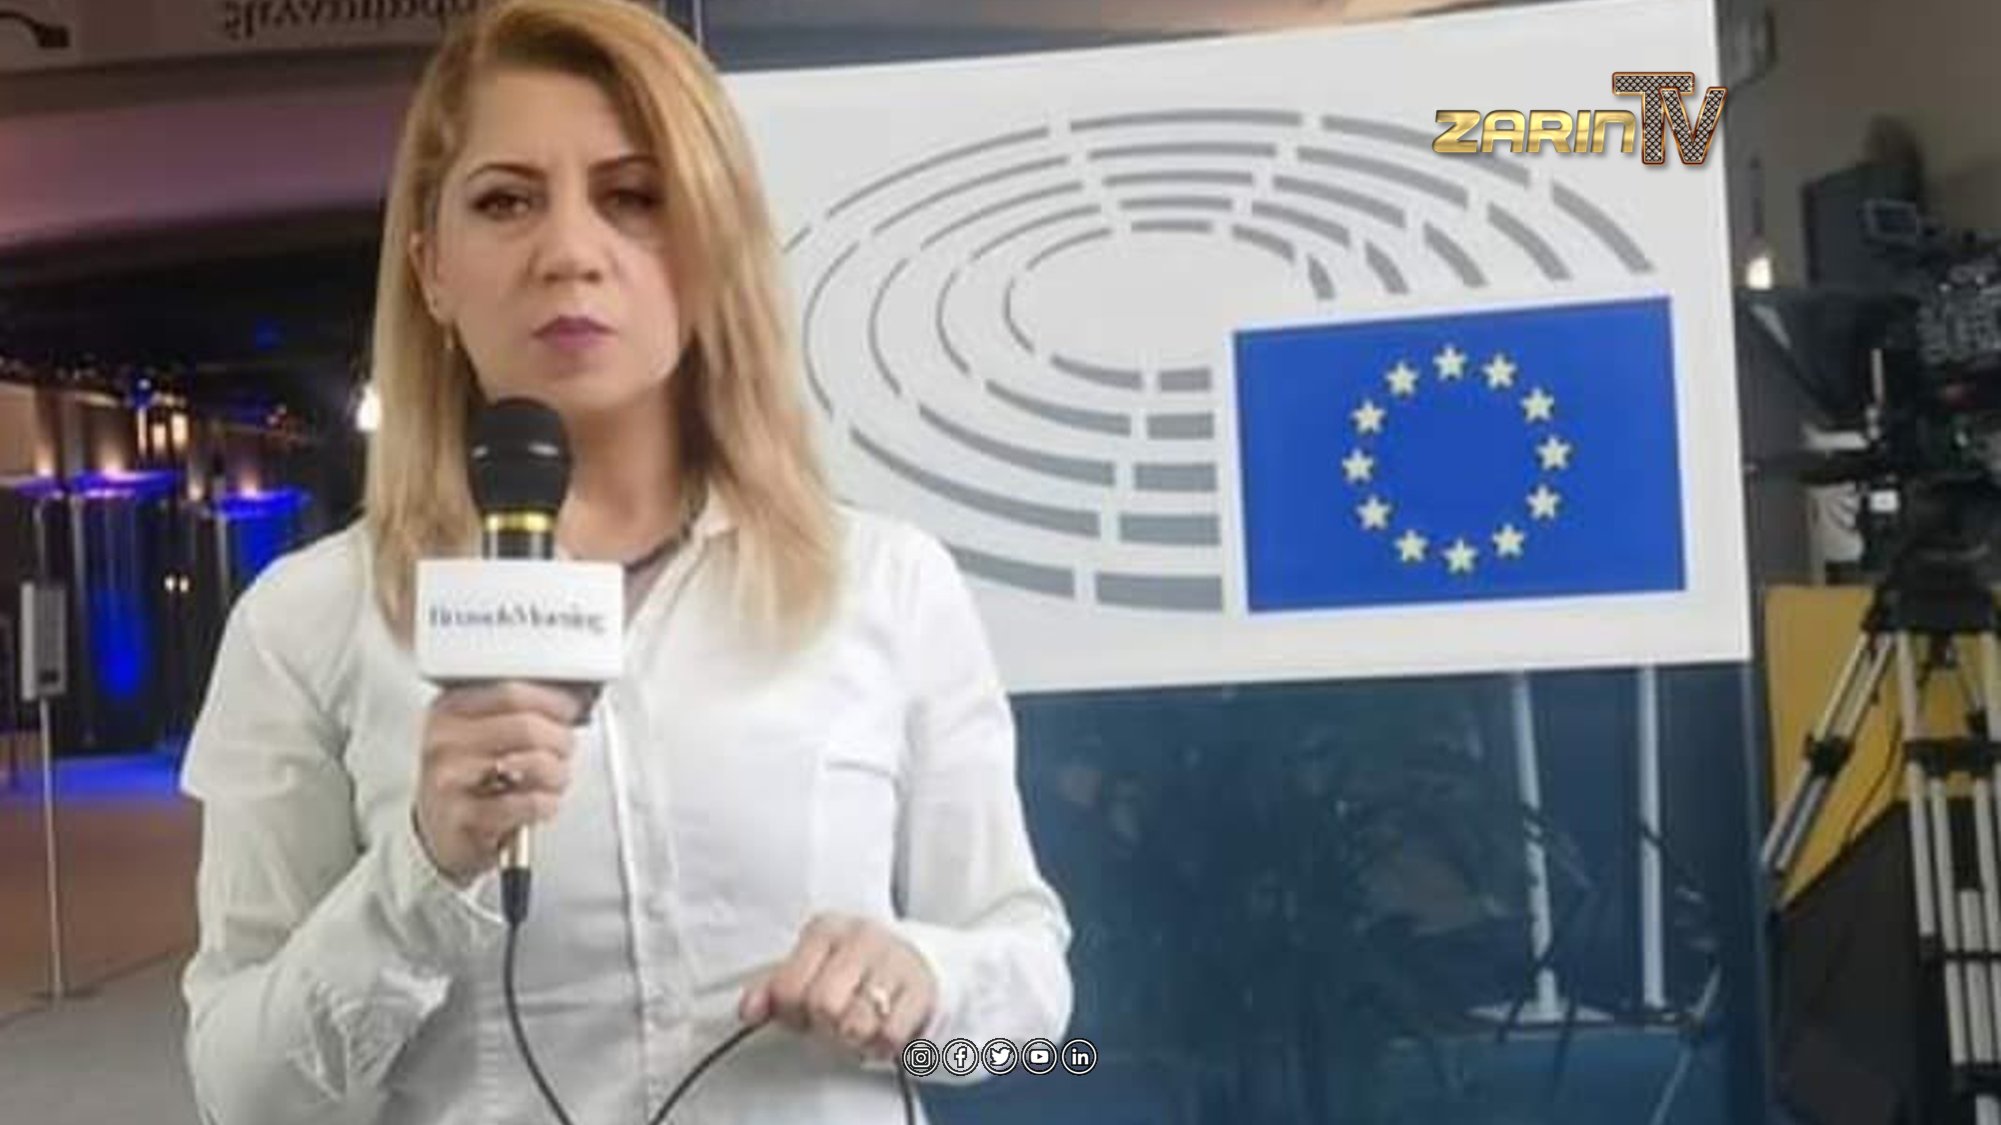 لیلما سدید، خبرنگار و دیپلمات سابق مقیم بلجیم، به عضویت در پارلمان اروپا نامزد شده است.